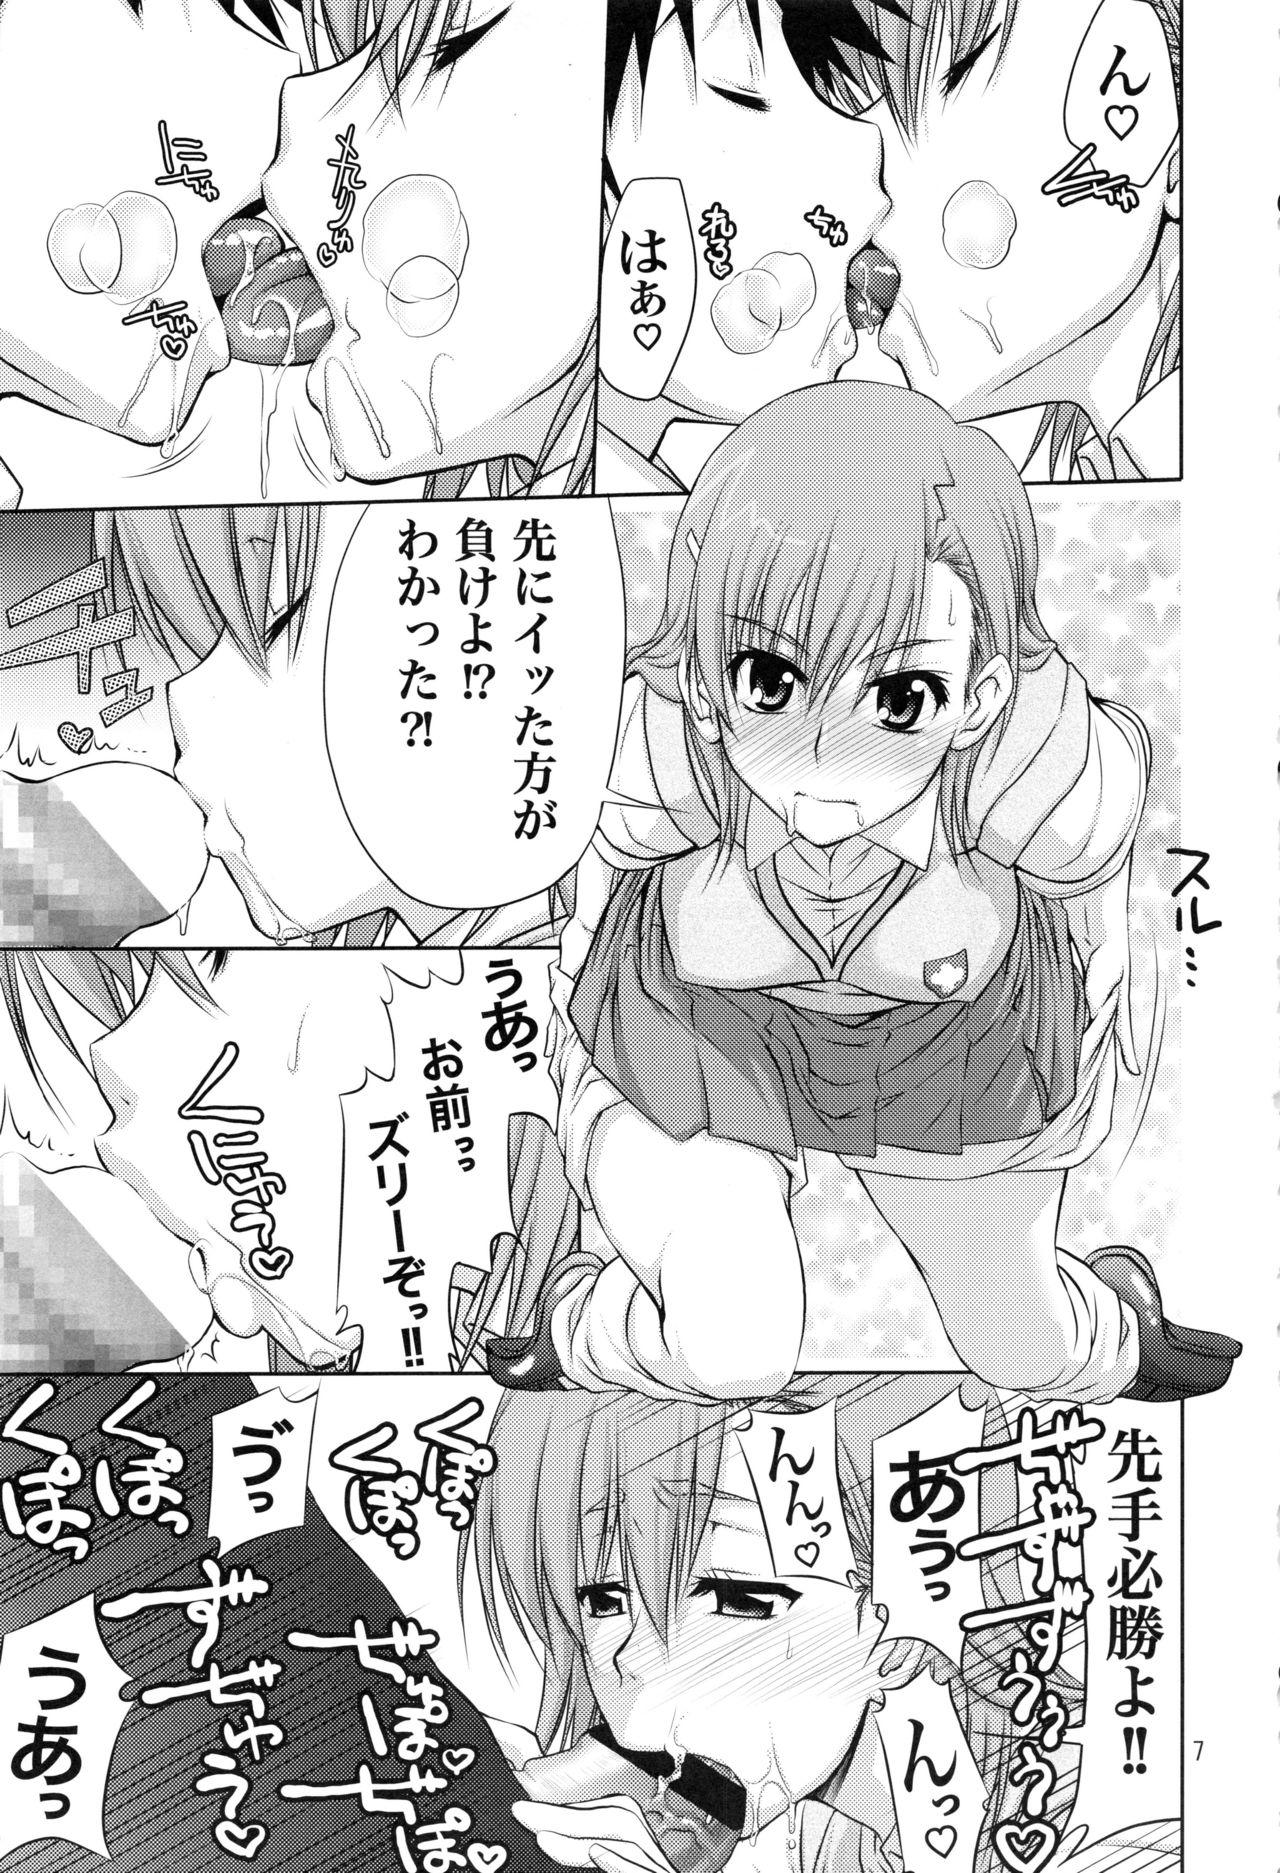 Girlfriend Stairway15 - Toaru majutsu no index Ano natsu de matteru Mayo chiki Guilty crown Dominatrix - Page 6